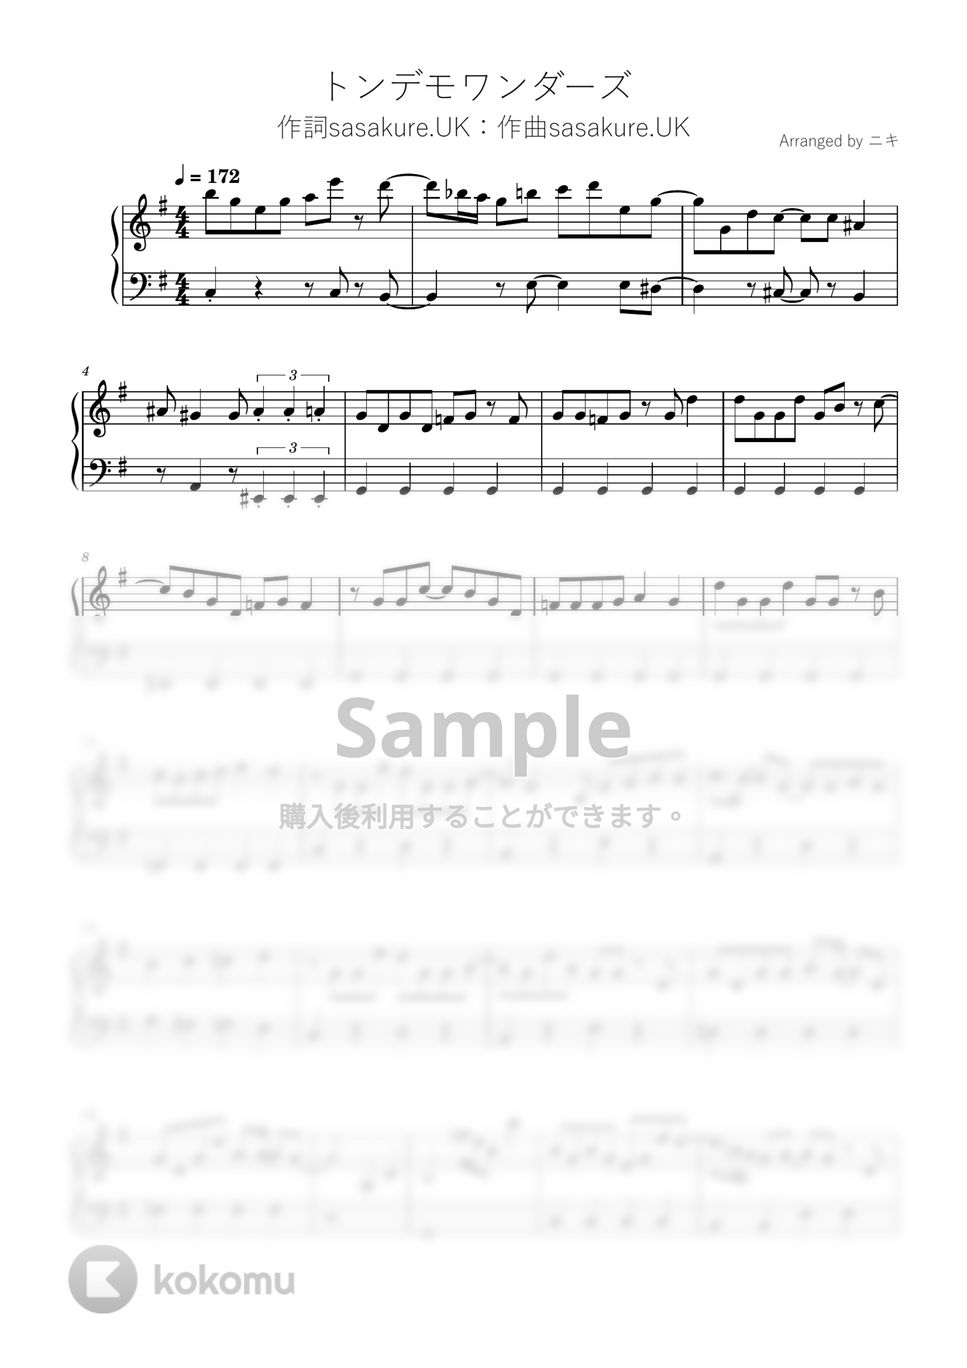 sasakure.‌UK - トンデモワンダーズ (ピアノ / 初級 / sasakure.‌UK / トンデモワンダーズ / ボカロ) by 簡単ボカロピアノch ニキ